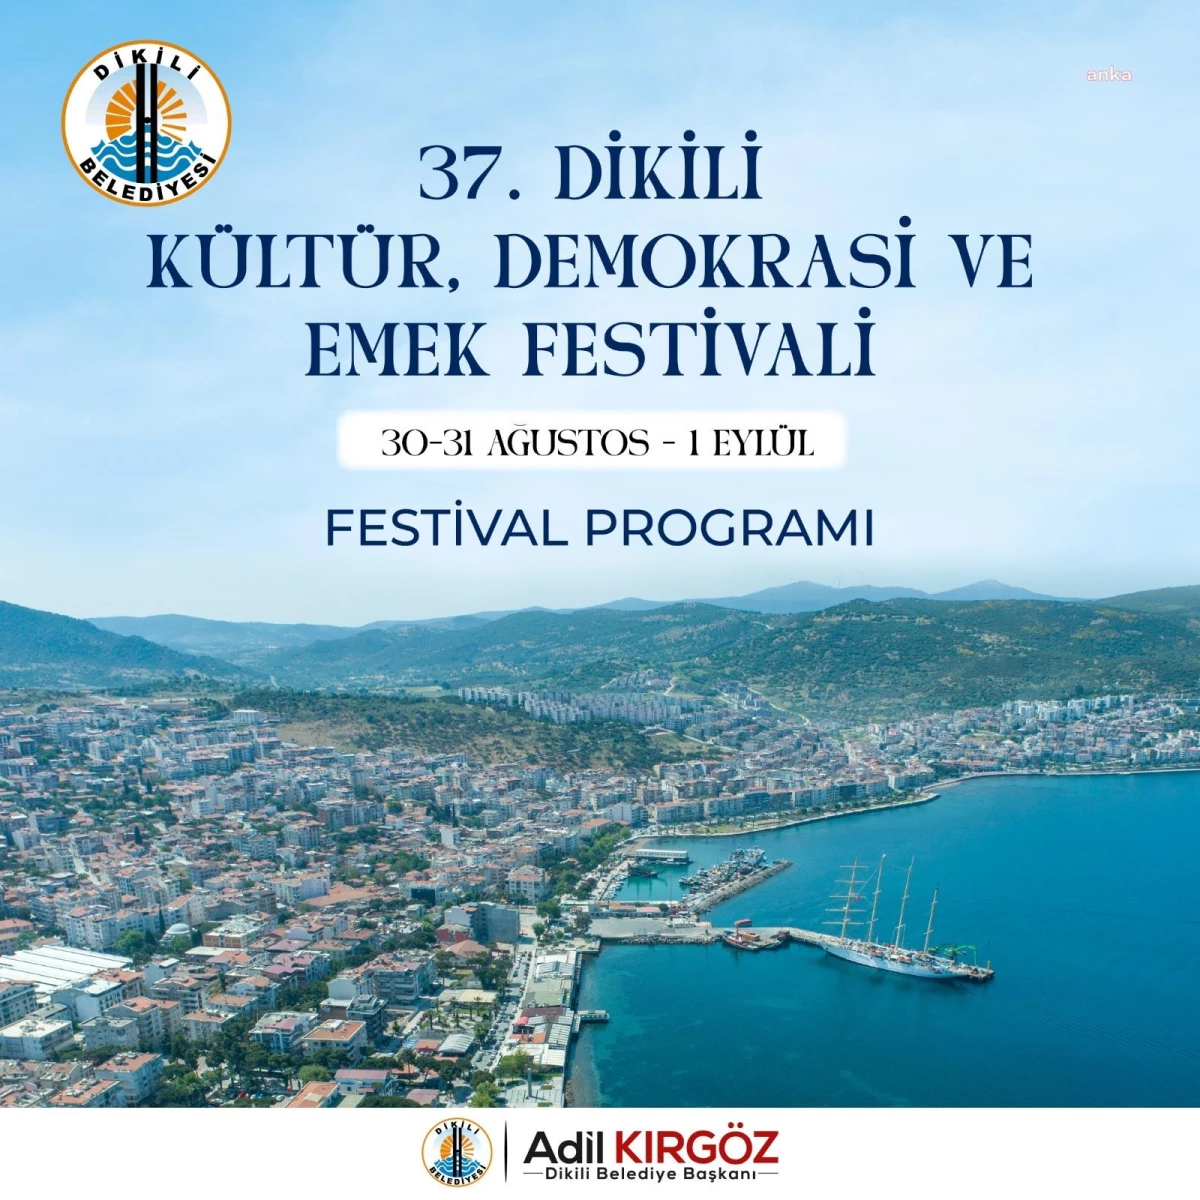 37. Dikili Kültür, Demokrasi ve Emek Festivali